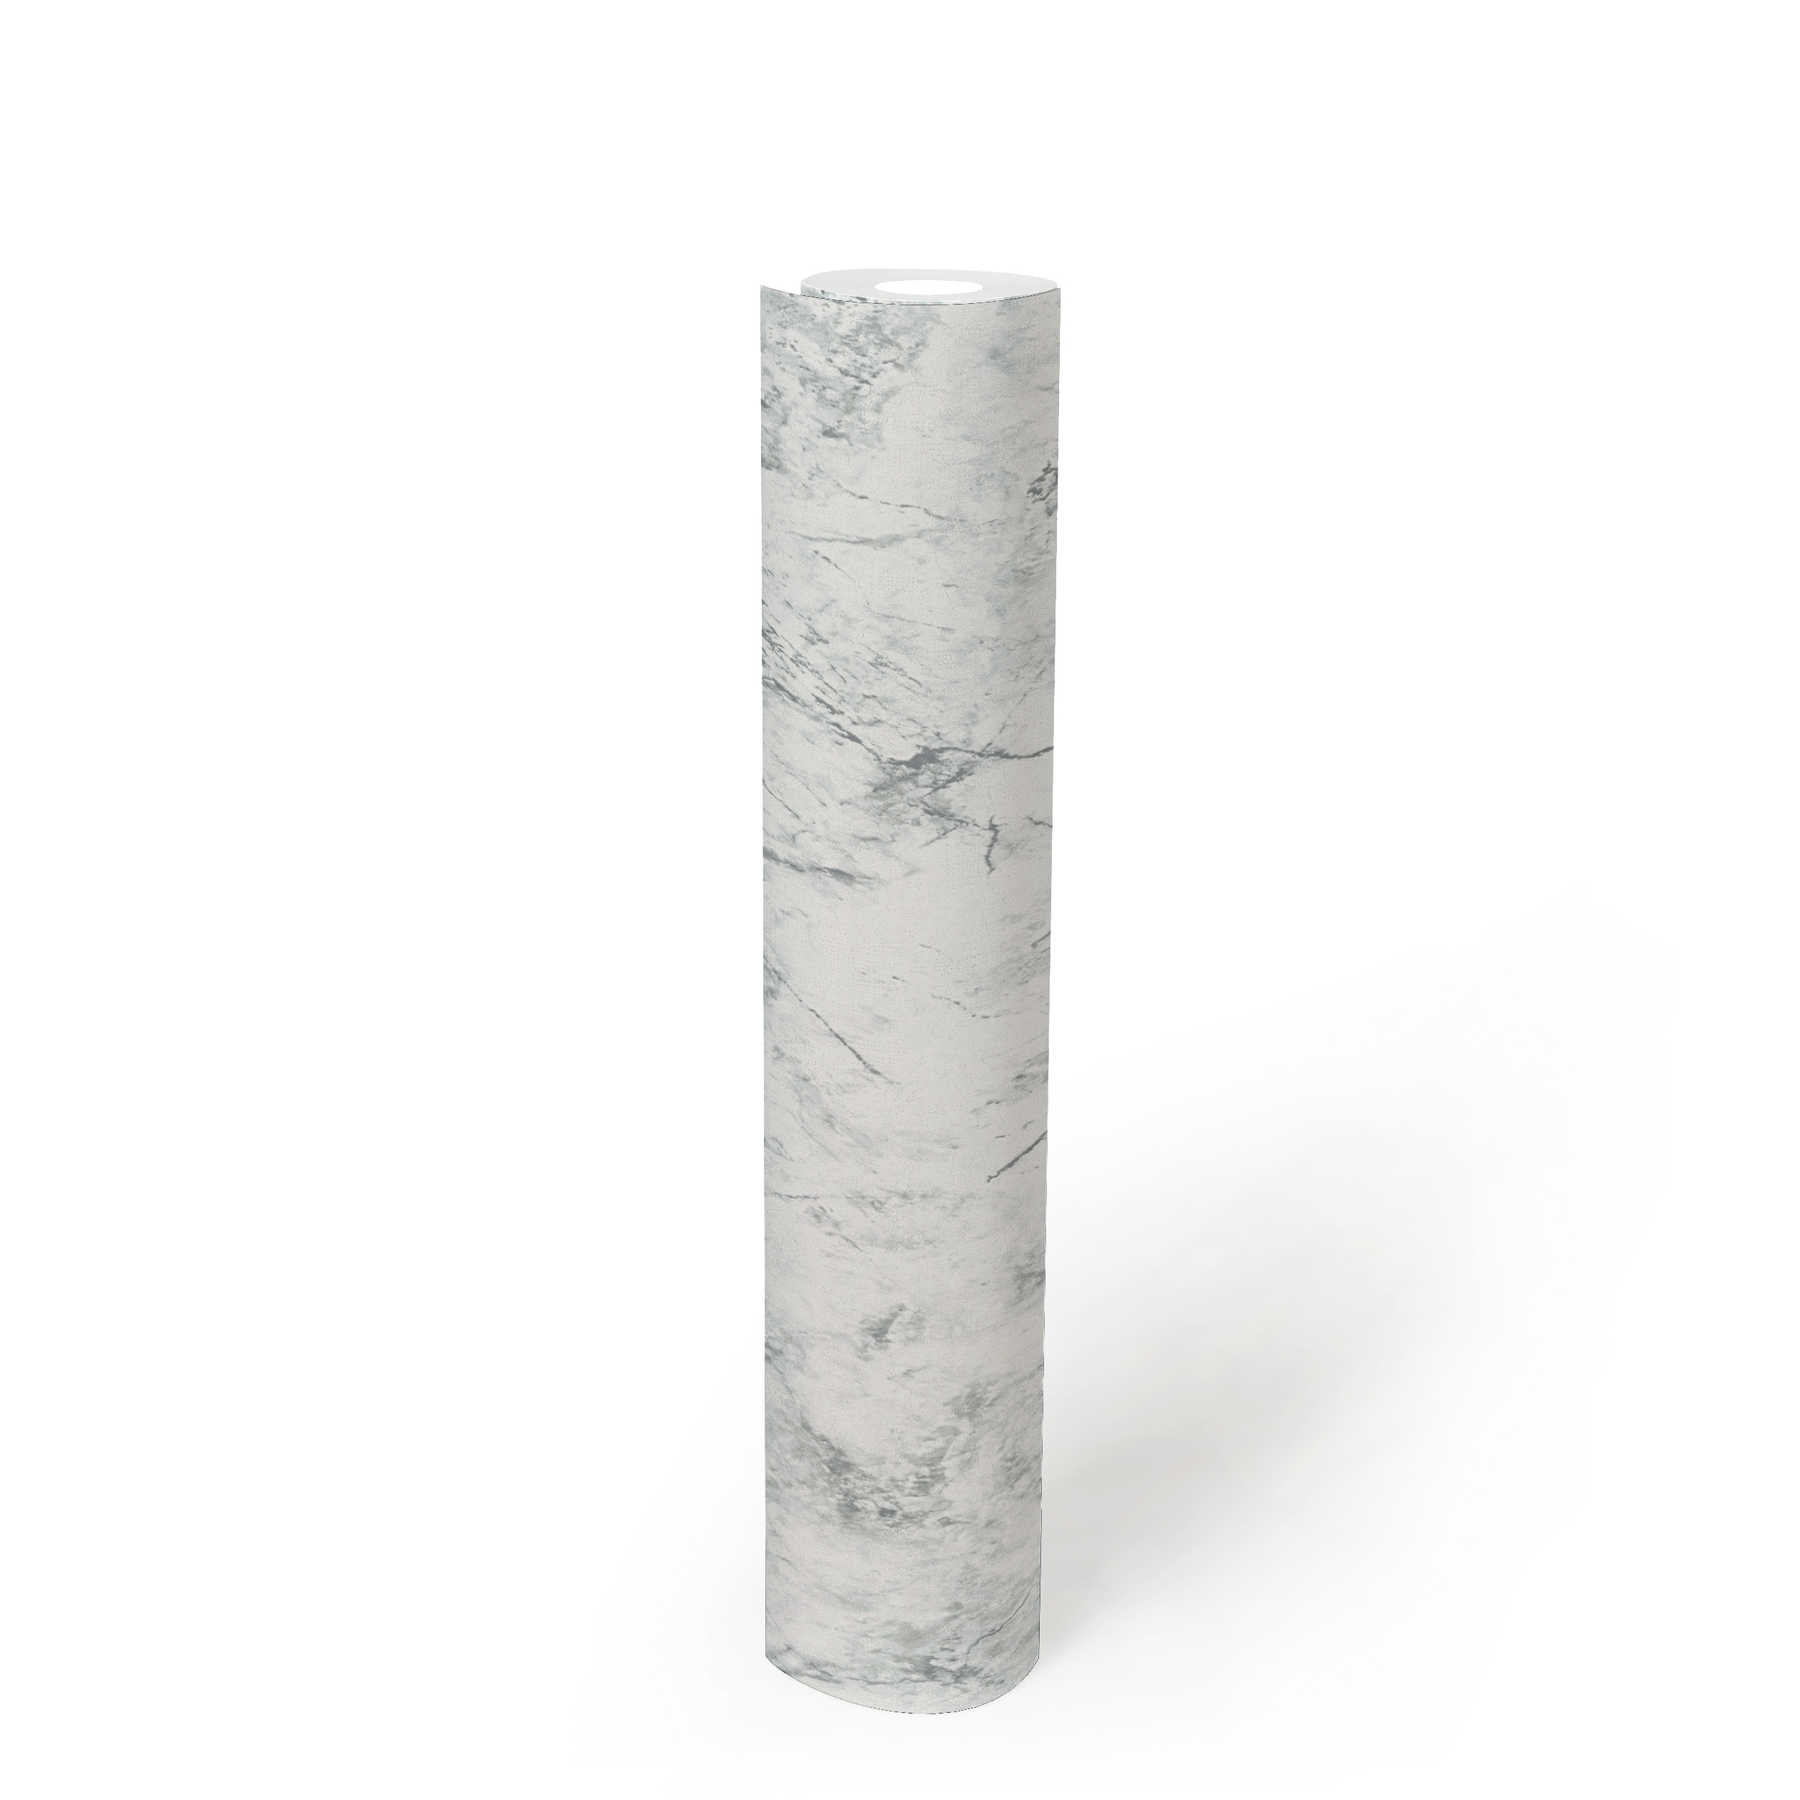             Papel pintado no tejido con aspecto de mármol fino - blanco, gris
        